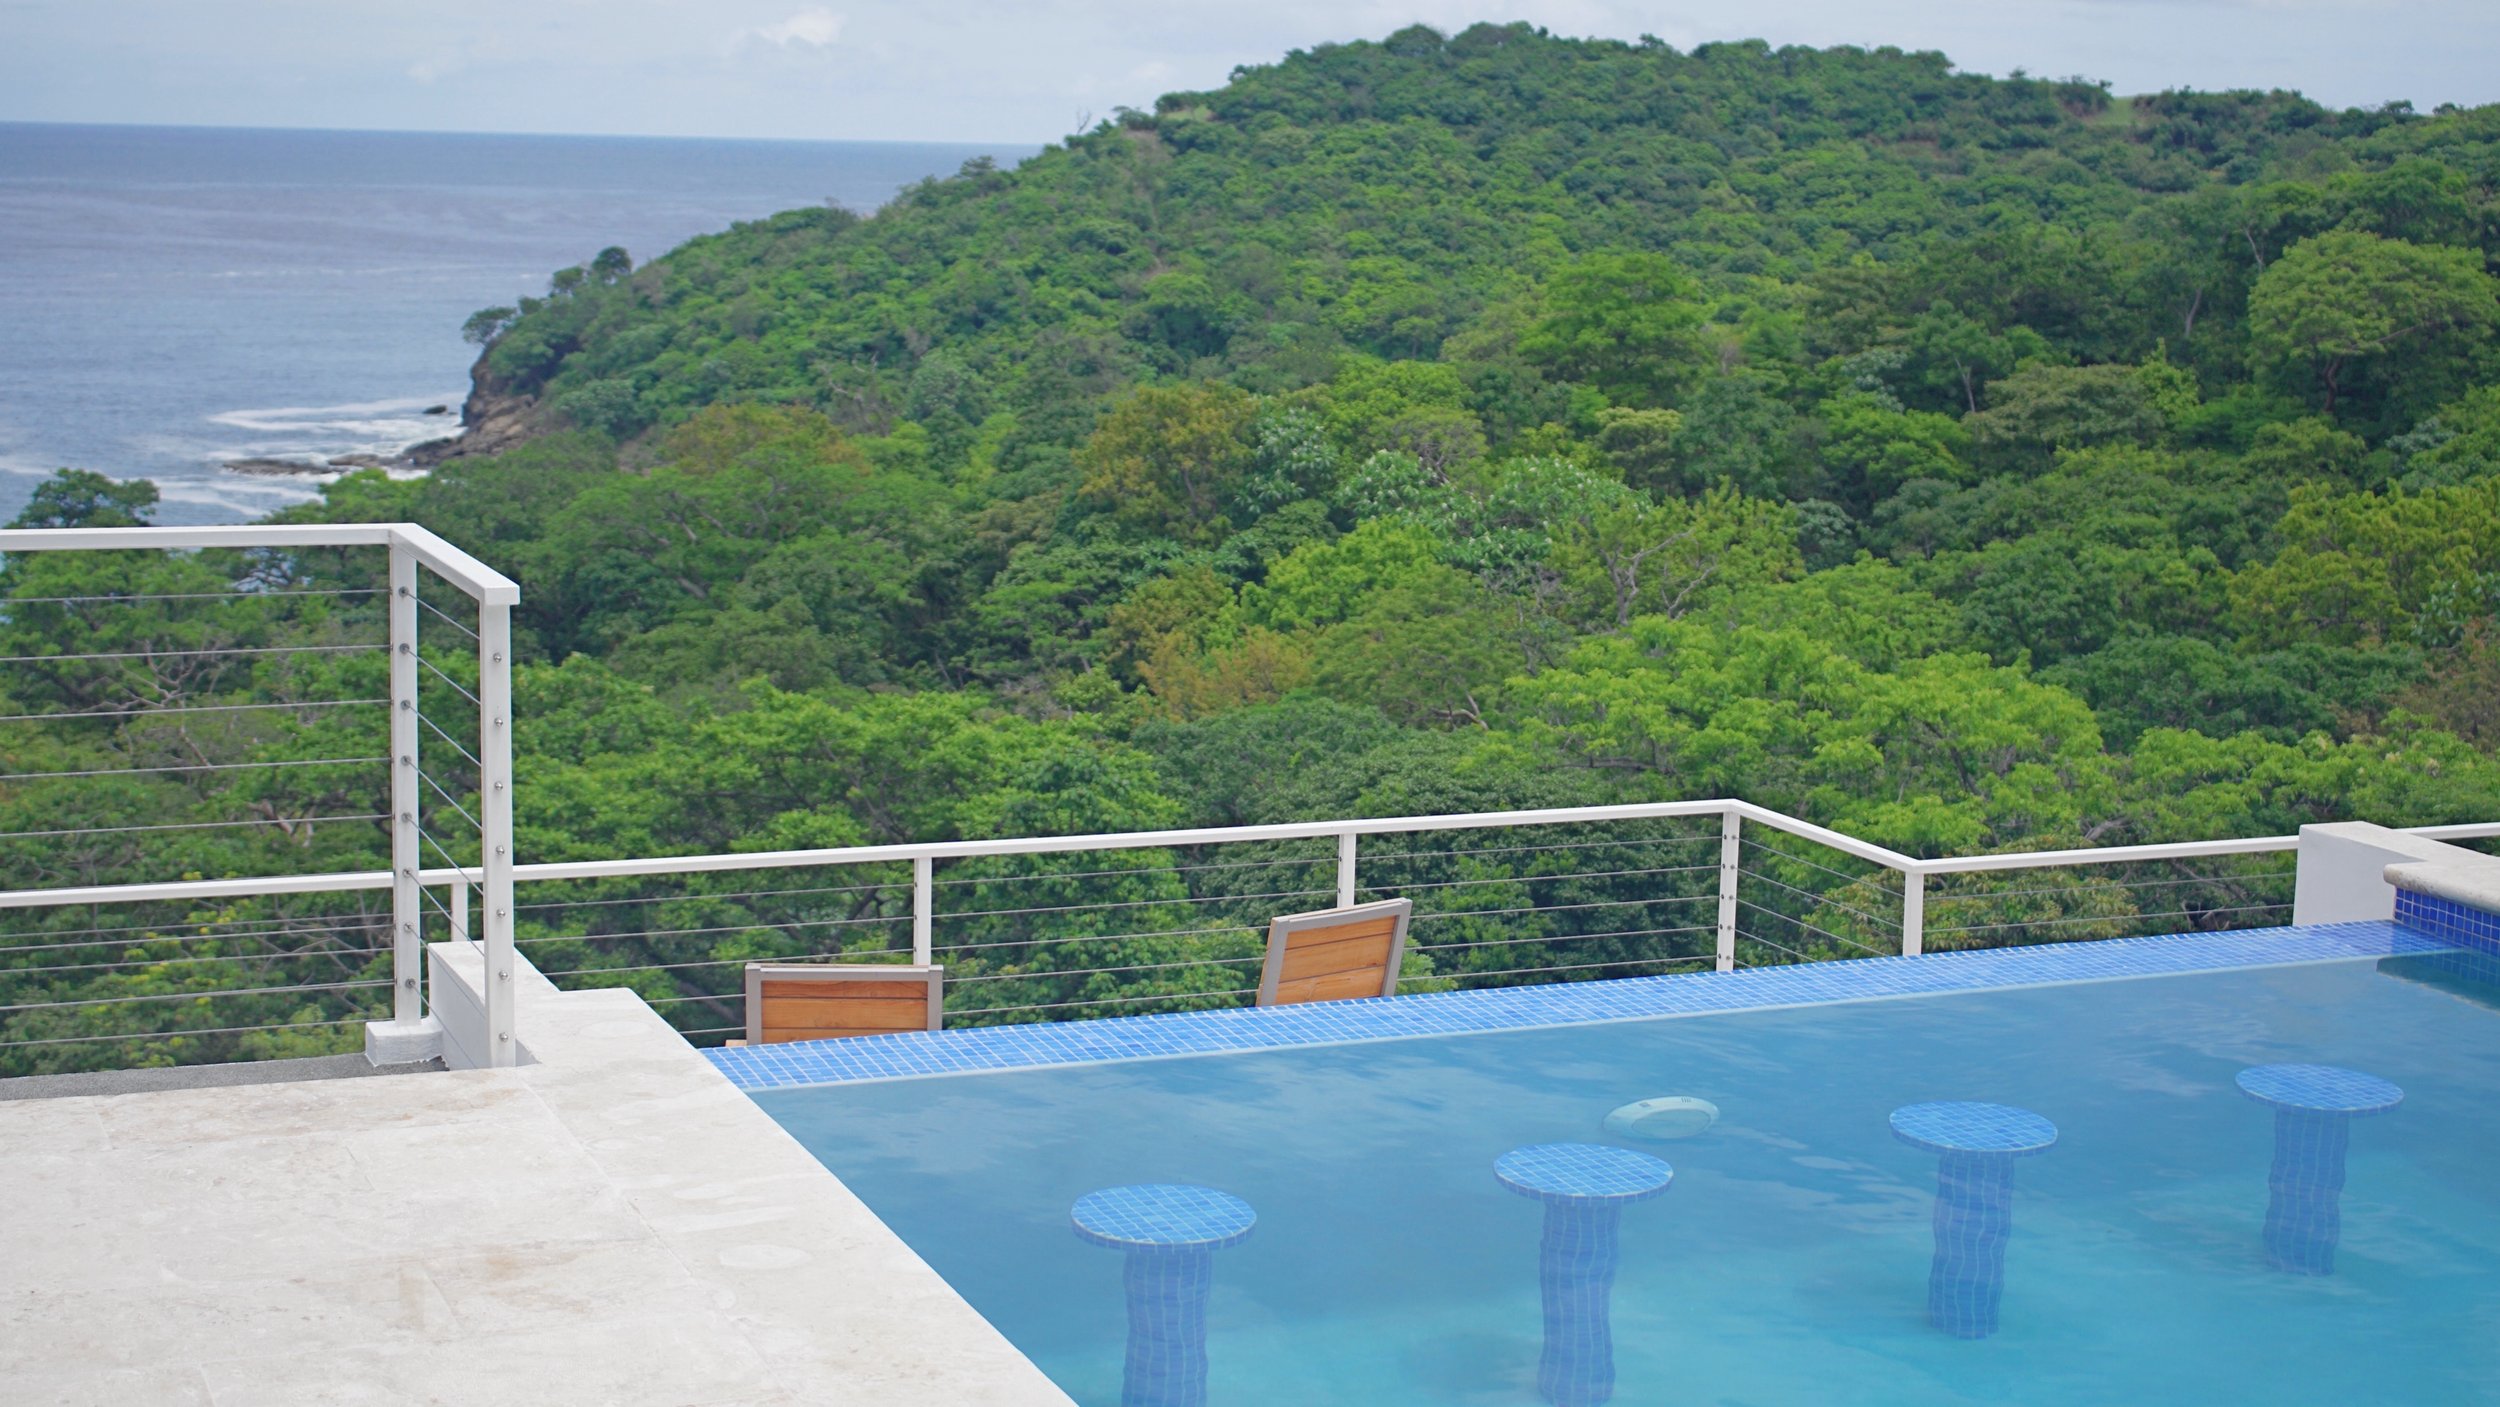 Home For Sale San Juan Del Sur Nicaragua Real Estate 13.jpg